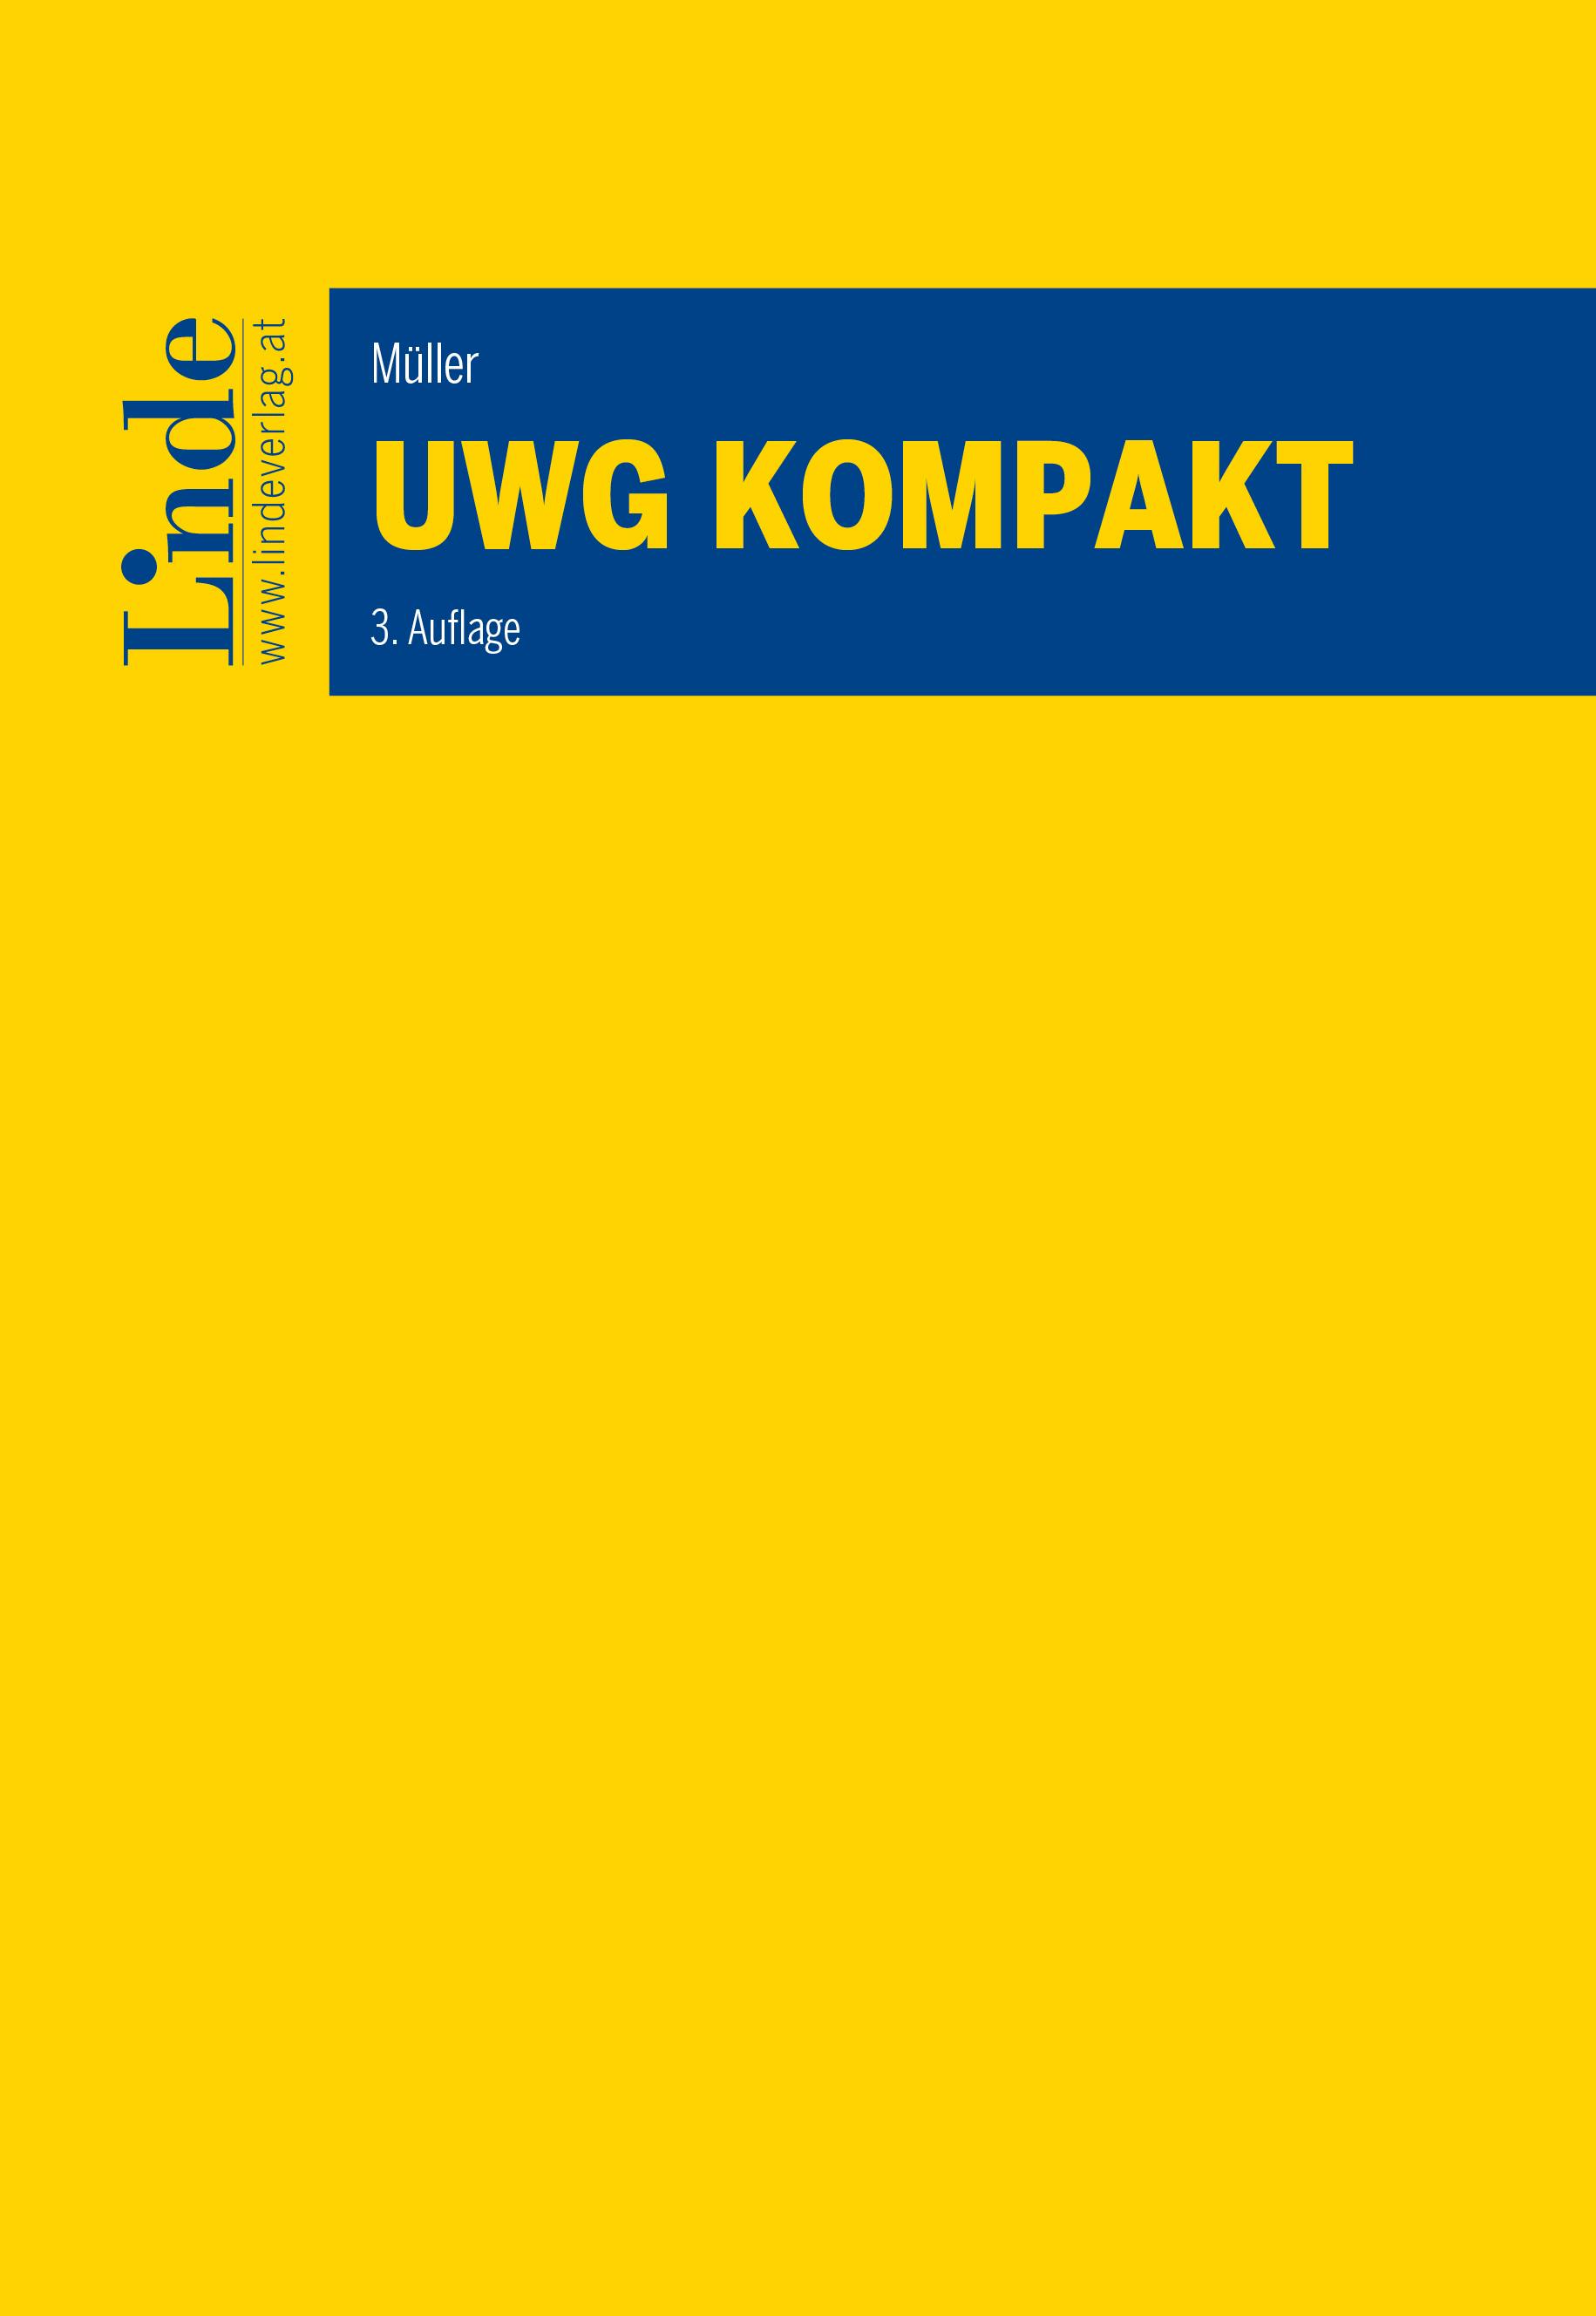 Müller
UWG kompakt